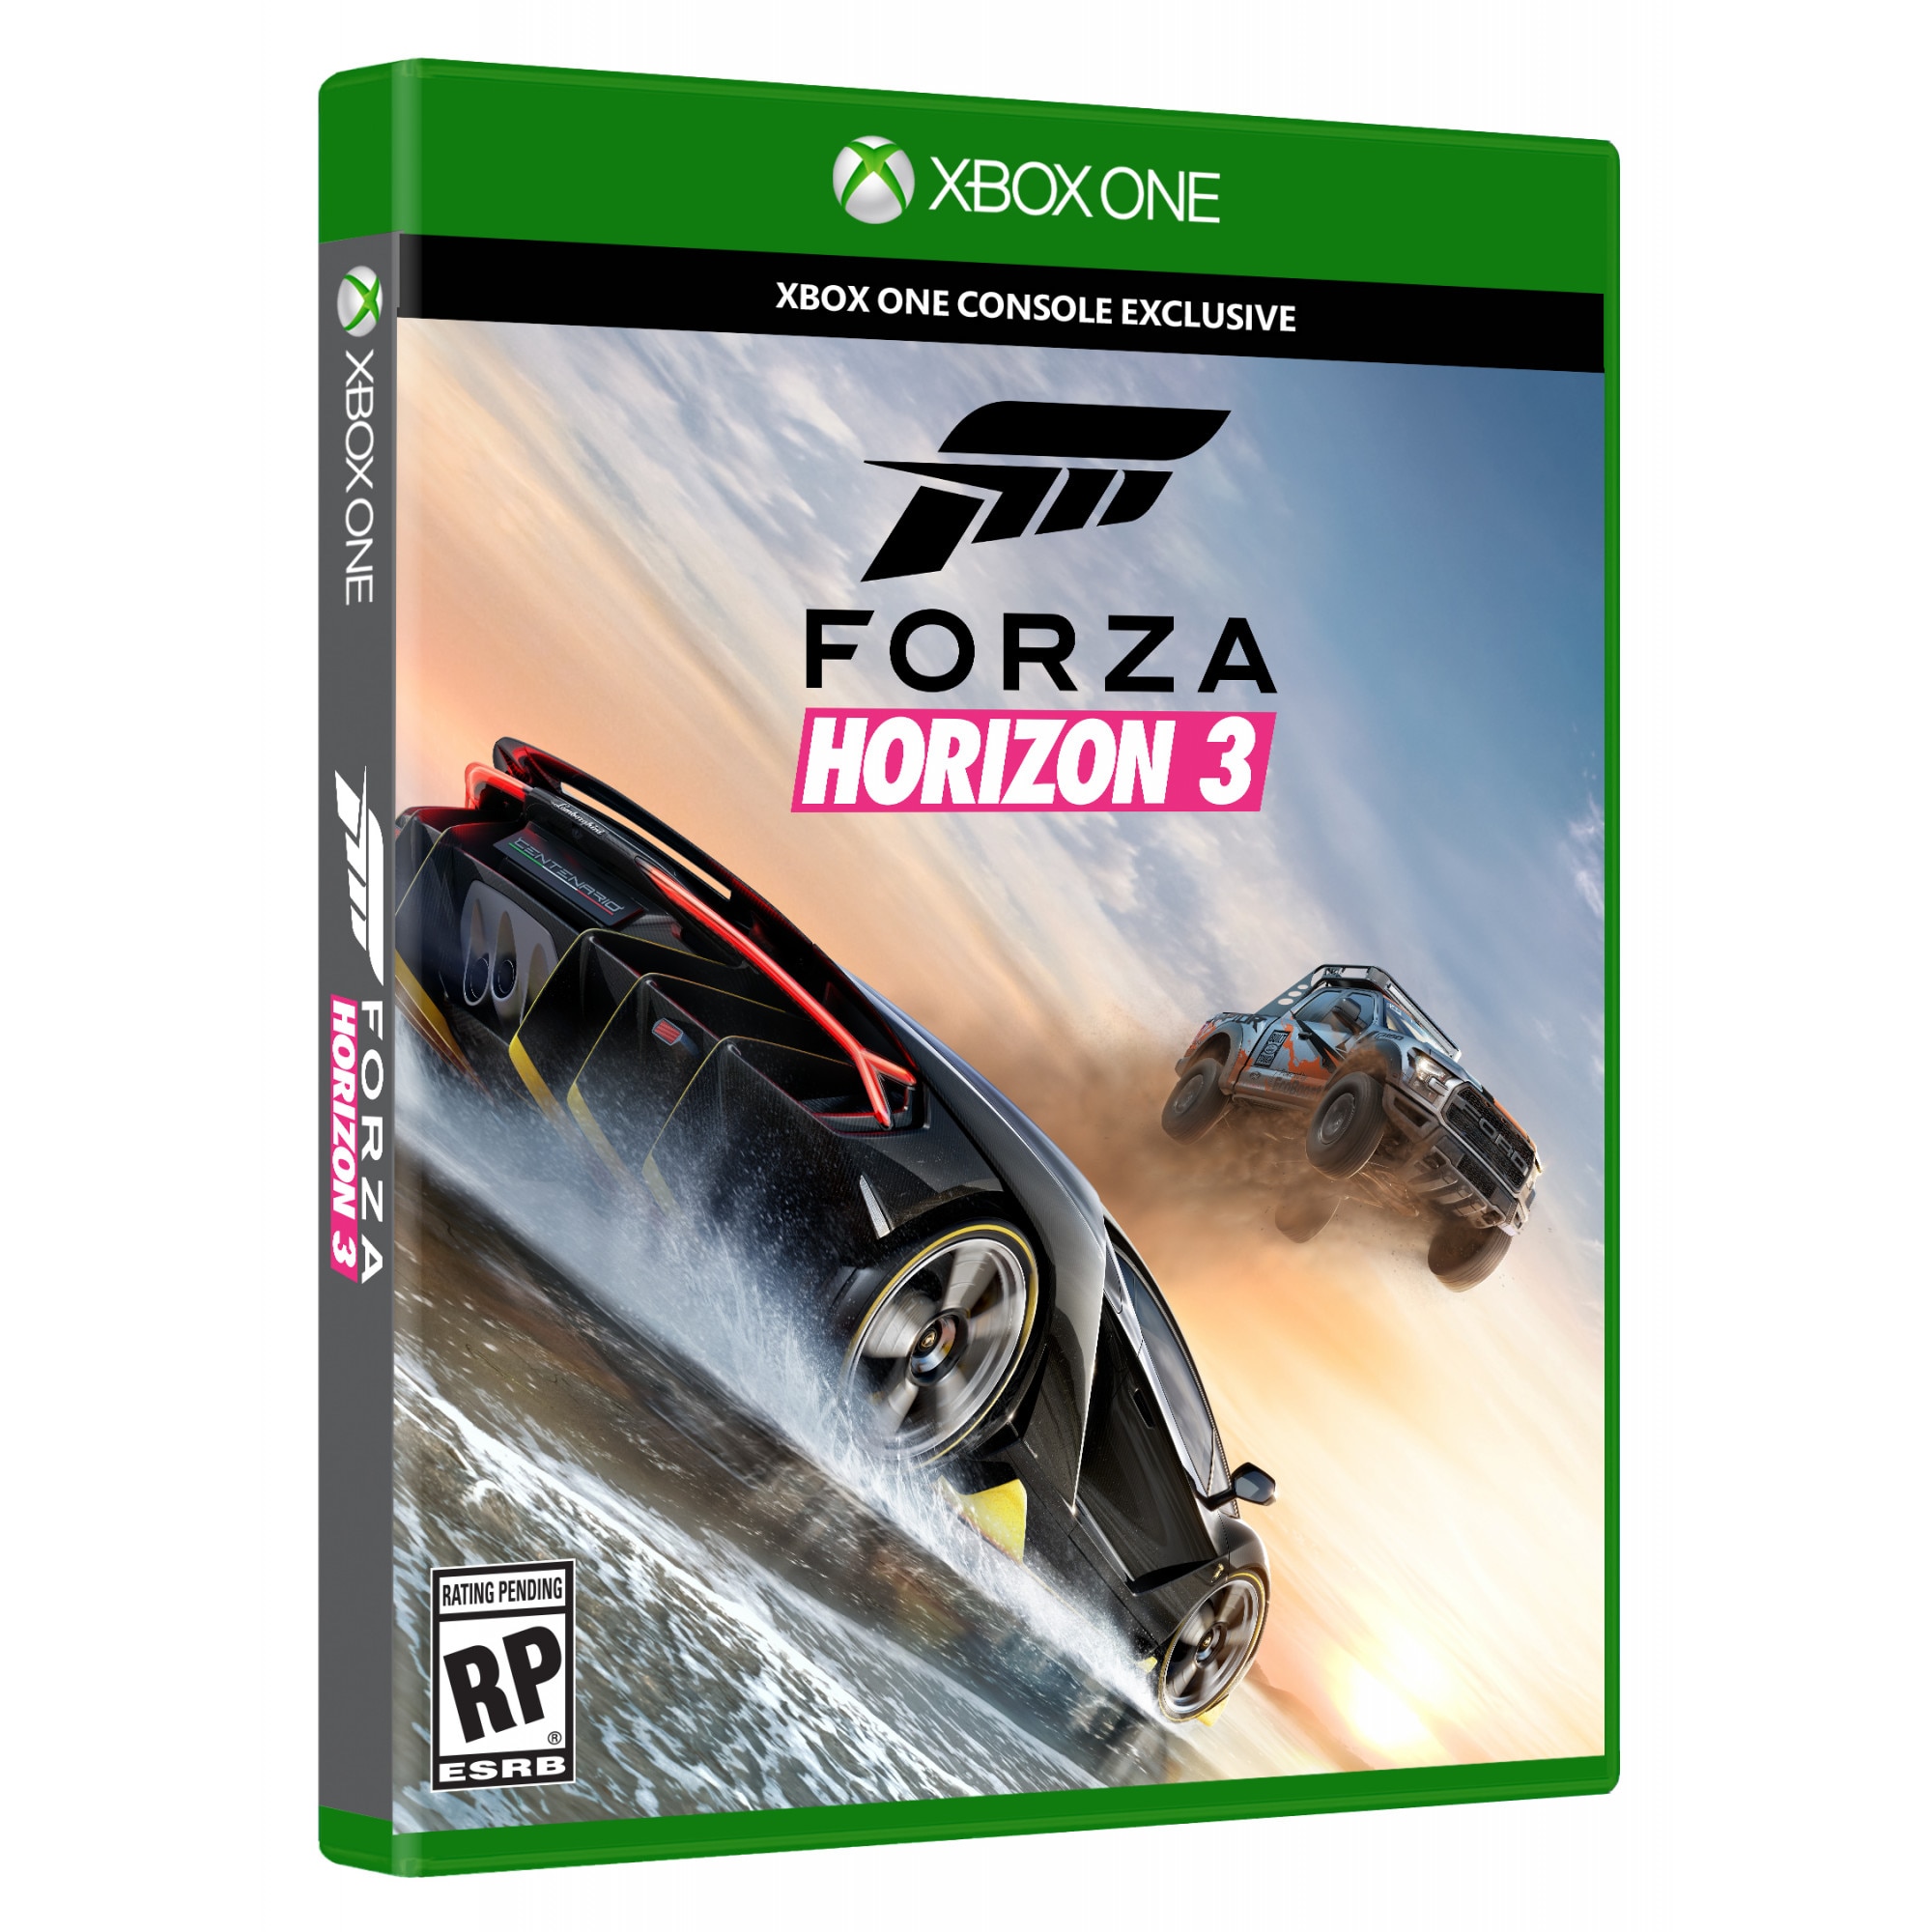 Форза хбокс. Forza Horizon 3 [Xbox one]. Forza Horizon 3 Xbox 360. Forza Horizon Xbox. Xbox one Forza Horizon 3 диск.